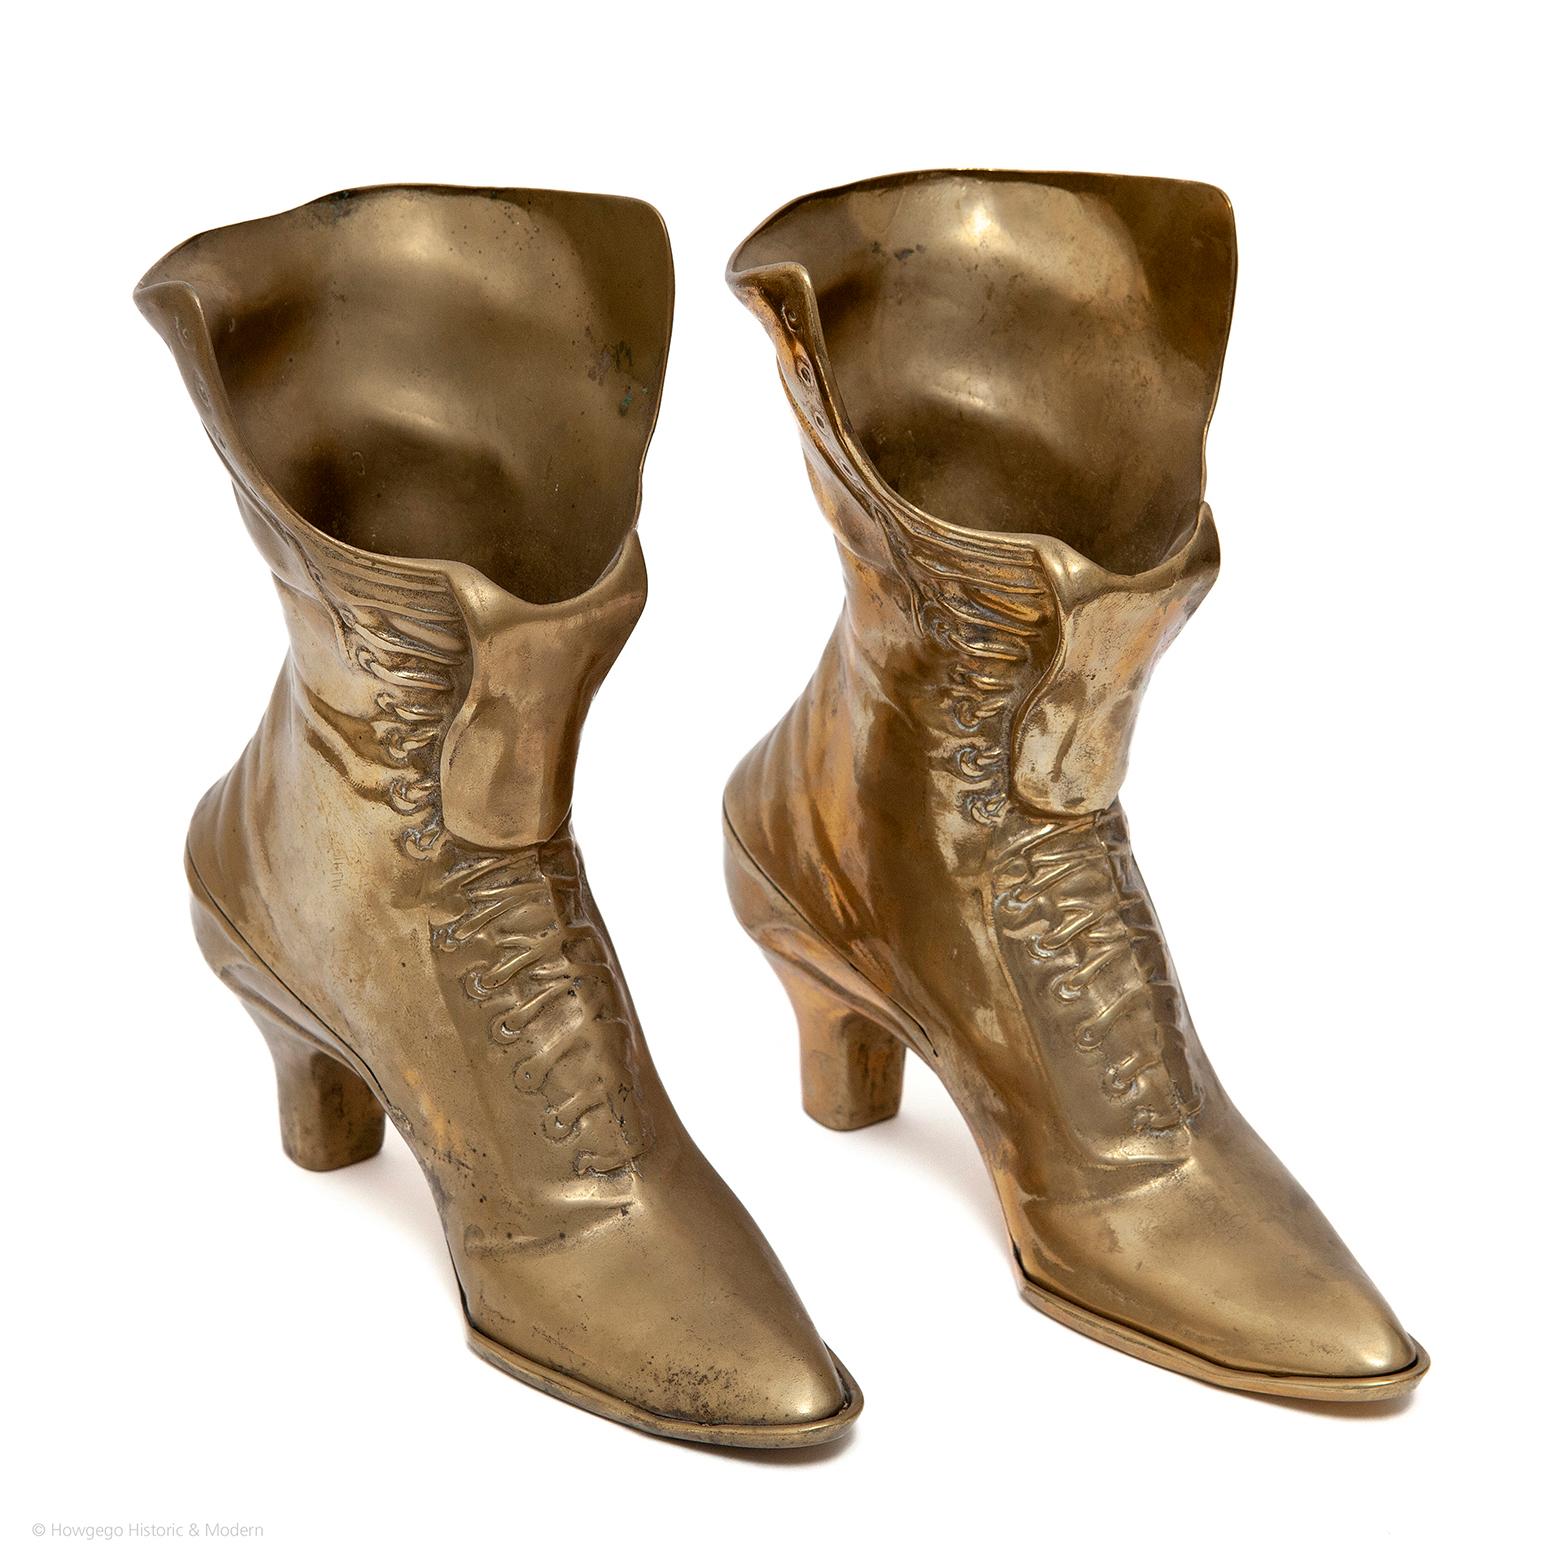 - Ungewöhnliches Paar Messingstiefel im viktorianischen Stil
- Wunderschön gegossen
- Schuhe sind durchdrungen von Bräuchen, symbolischer Bedeutung und Geschichten: Aschenputtel, Dorothy. Im 17. und 18. Jahrhundert wurden Schuhe zu besonderen